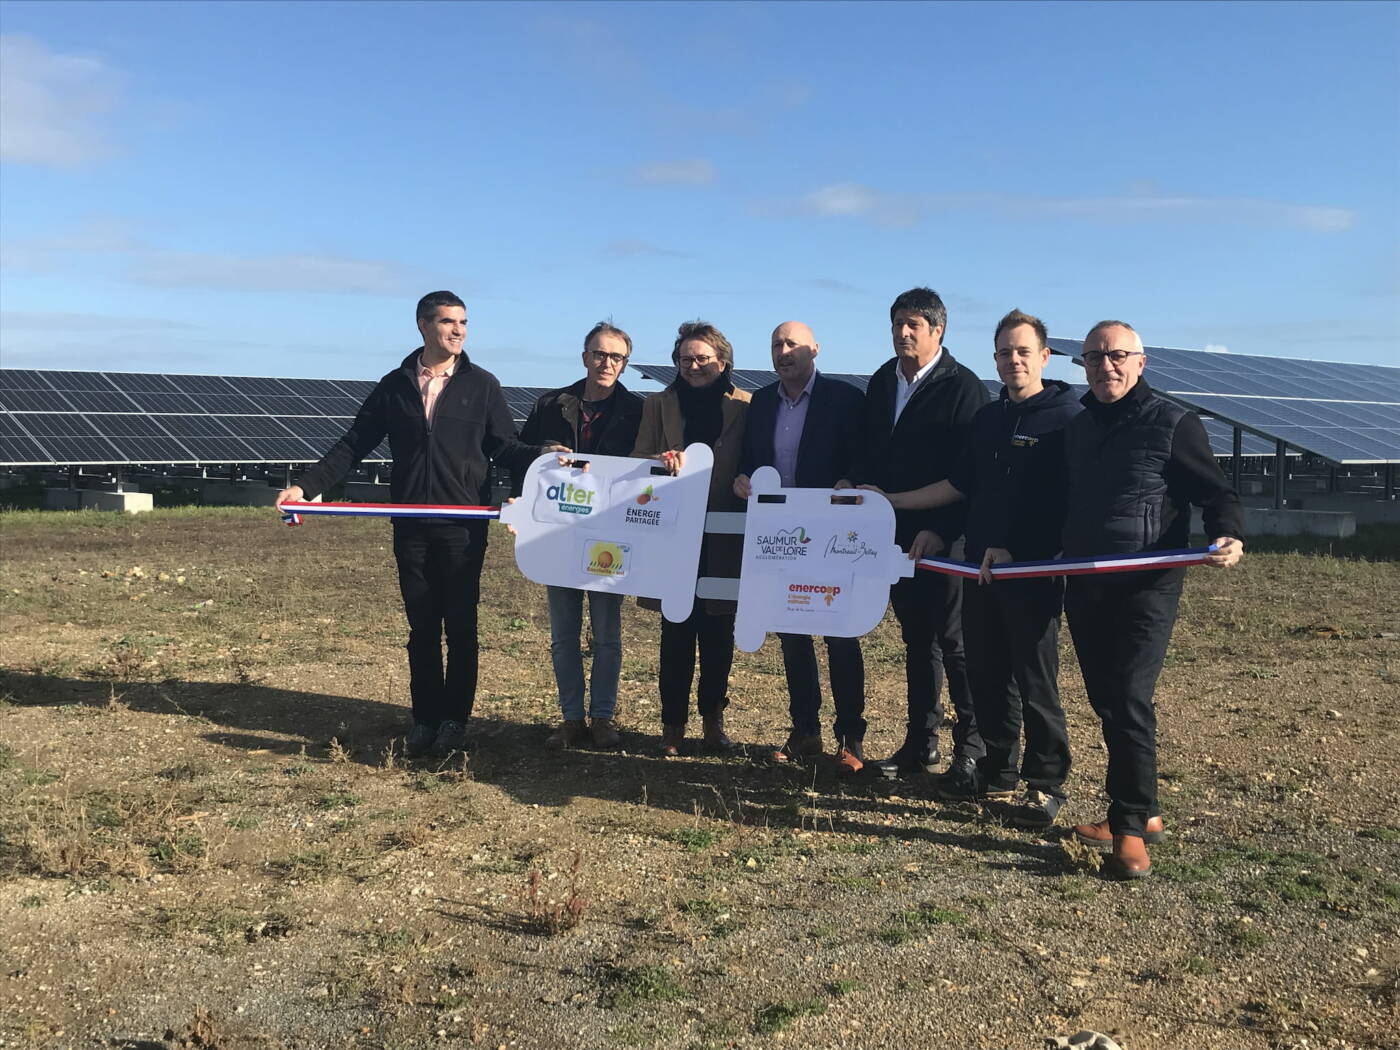 Inauguration de la centrale solaire citoyenne de Champ de Liveau, co-financée par Energie Partagée